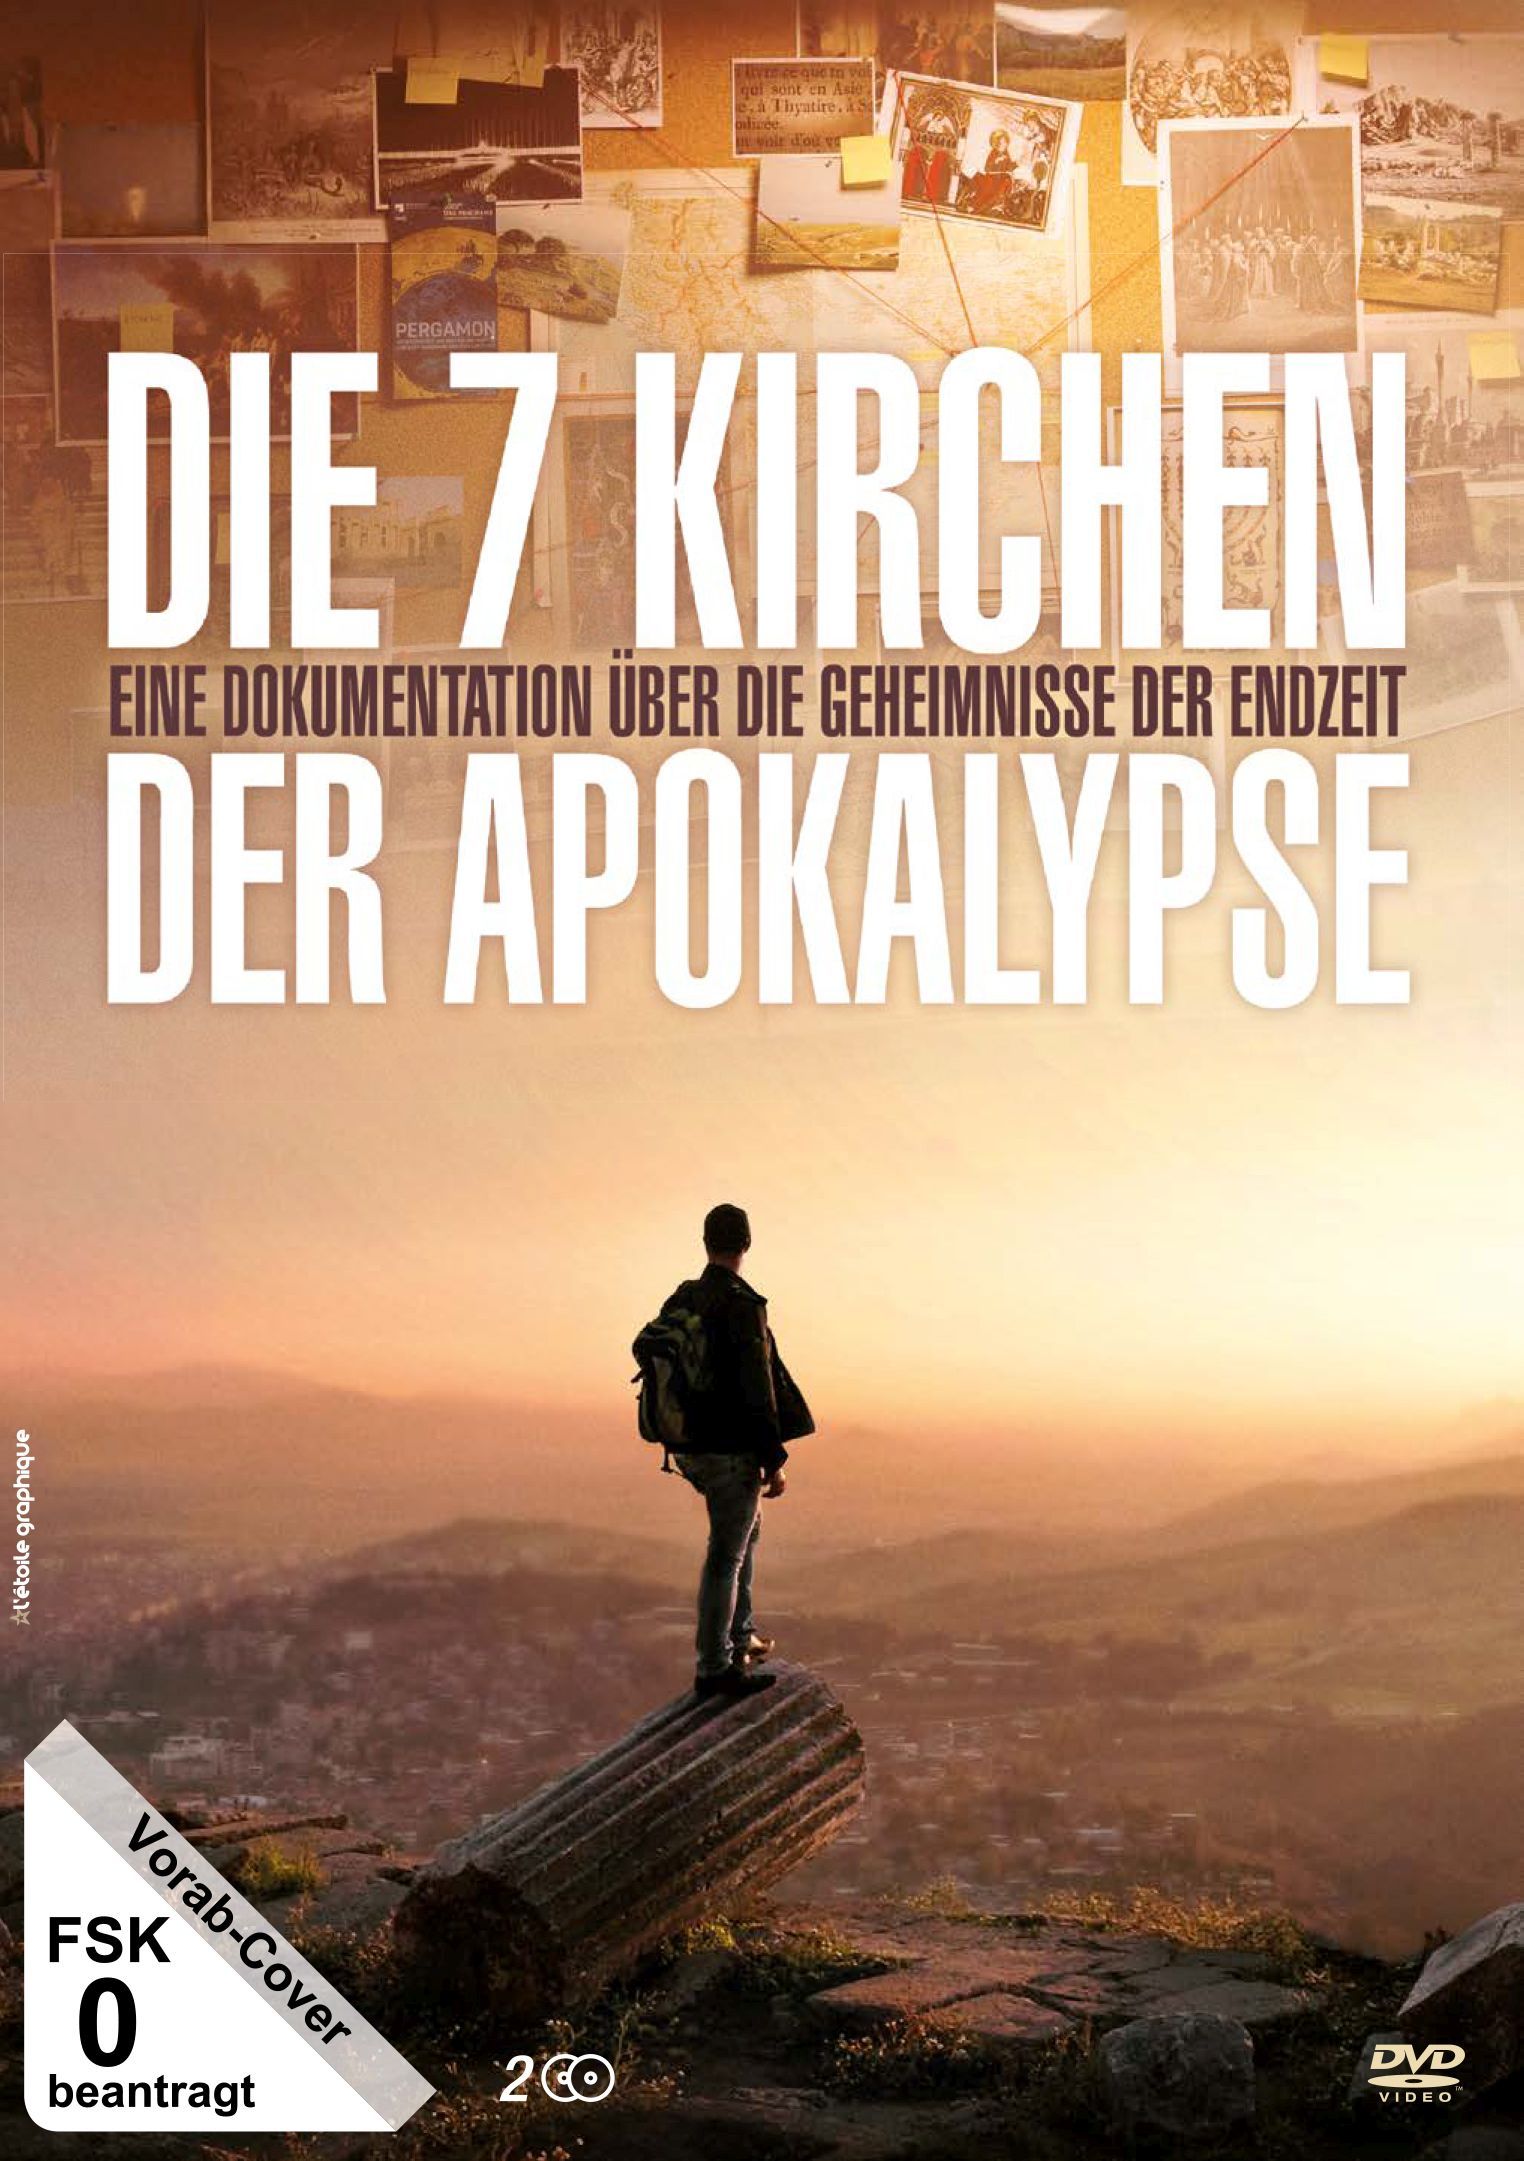 Die 7 Kirchen der Apokalypse [Doppel-DVD]|Dokumentation über die Geheimnisse der Offenbarung